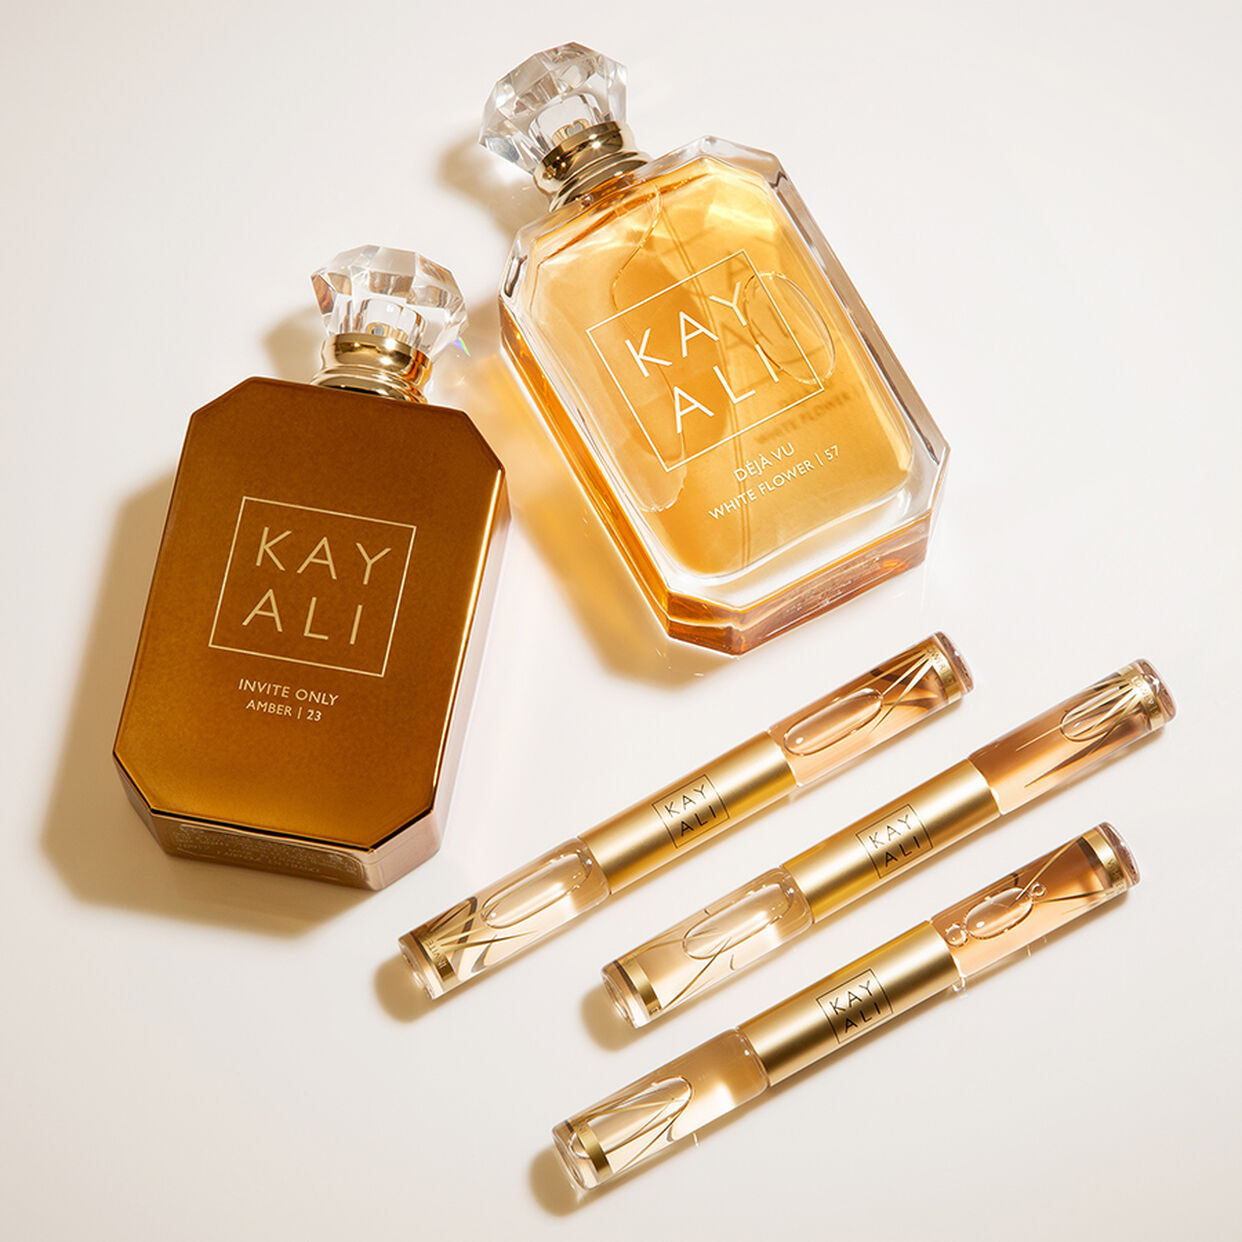 Kayali - Sexy Fall 🍁 Perfume Combo! @kayali outdid